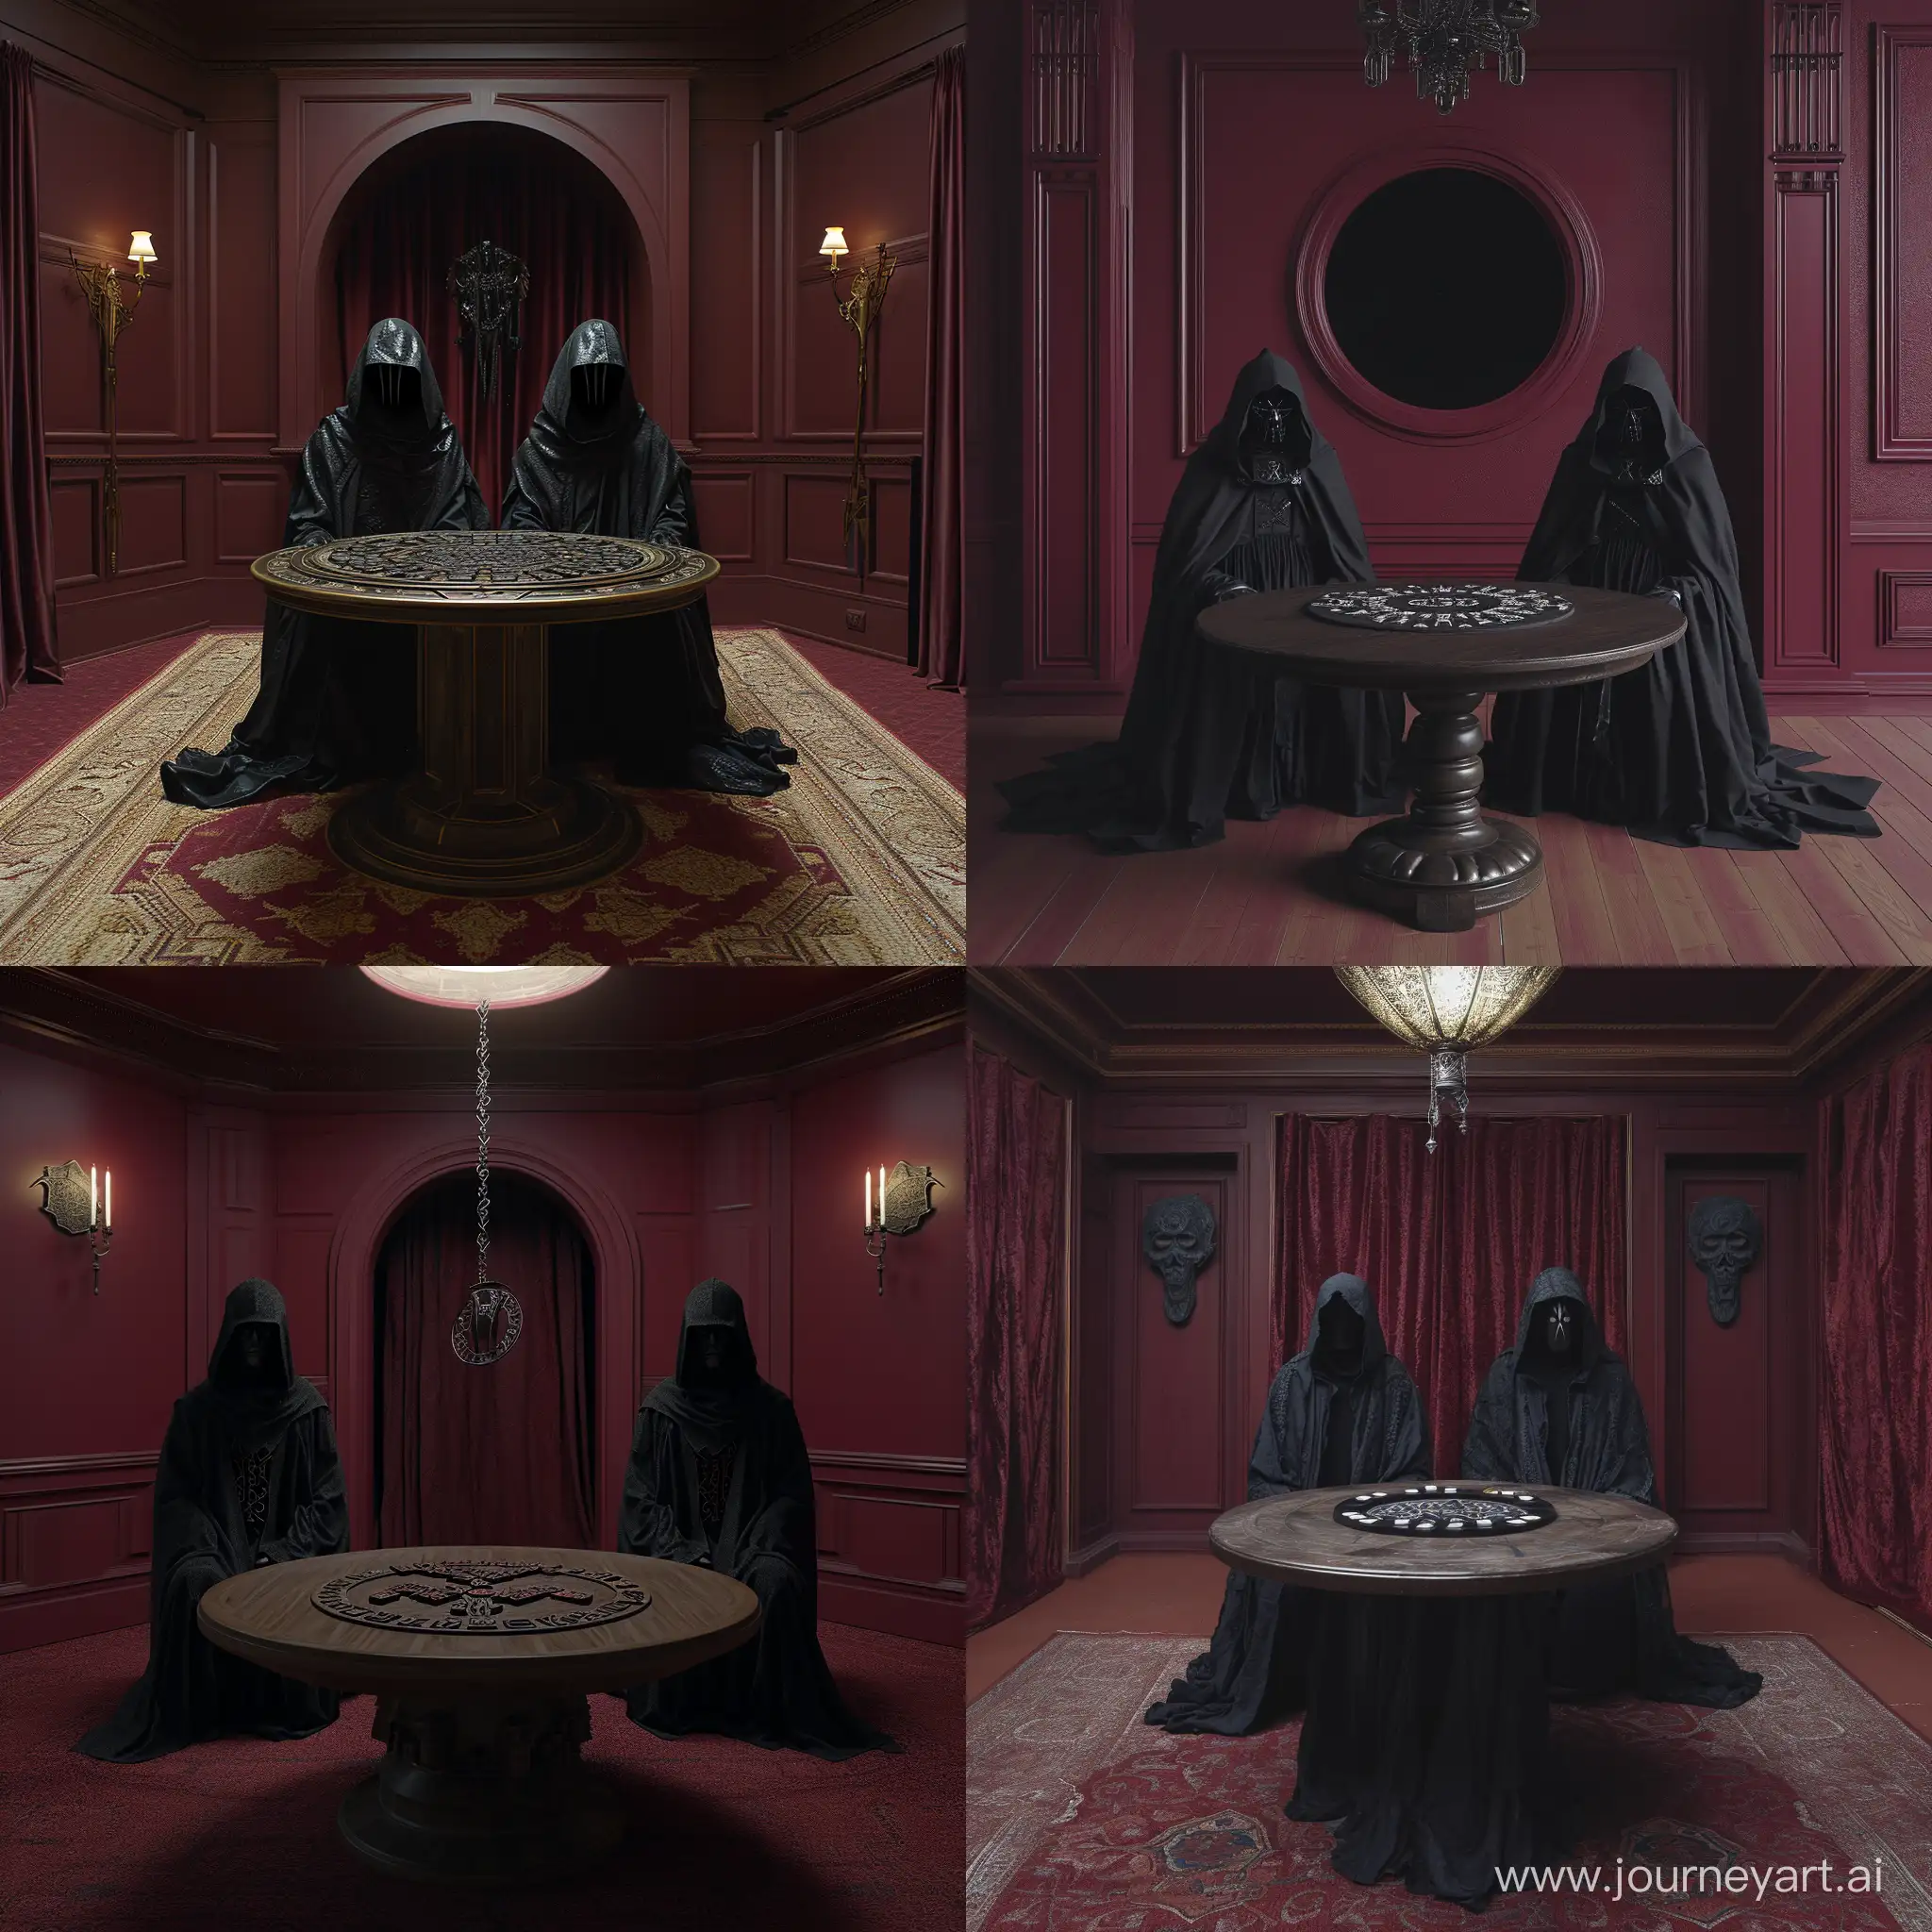 просторное бордовое помещение, в центре стоит круглый стол с рунами, за которым сидят две фигуры без лиц в черных плащах с капюшонами 
